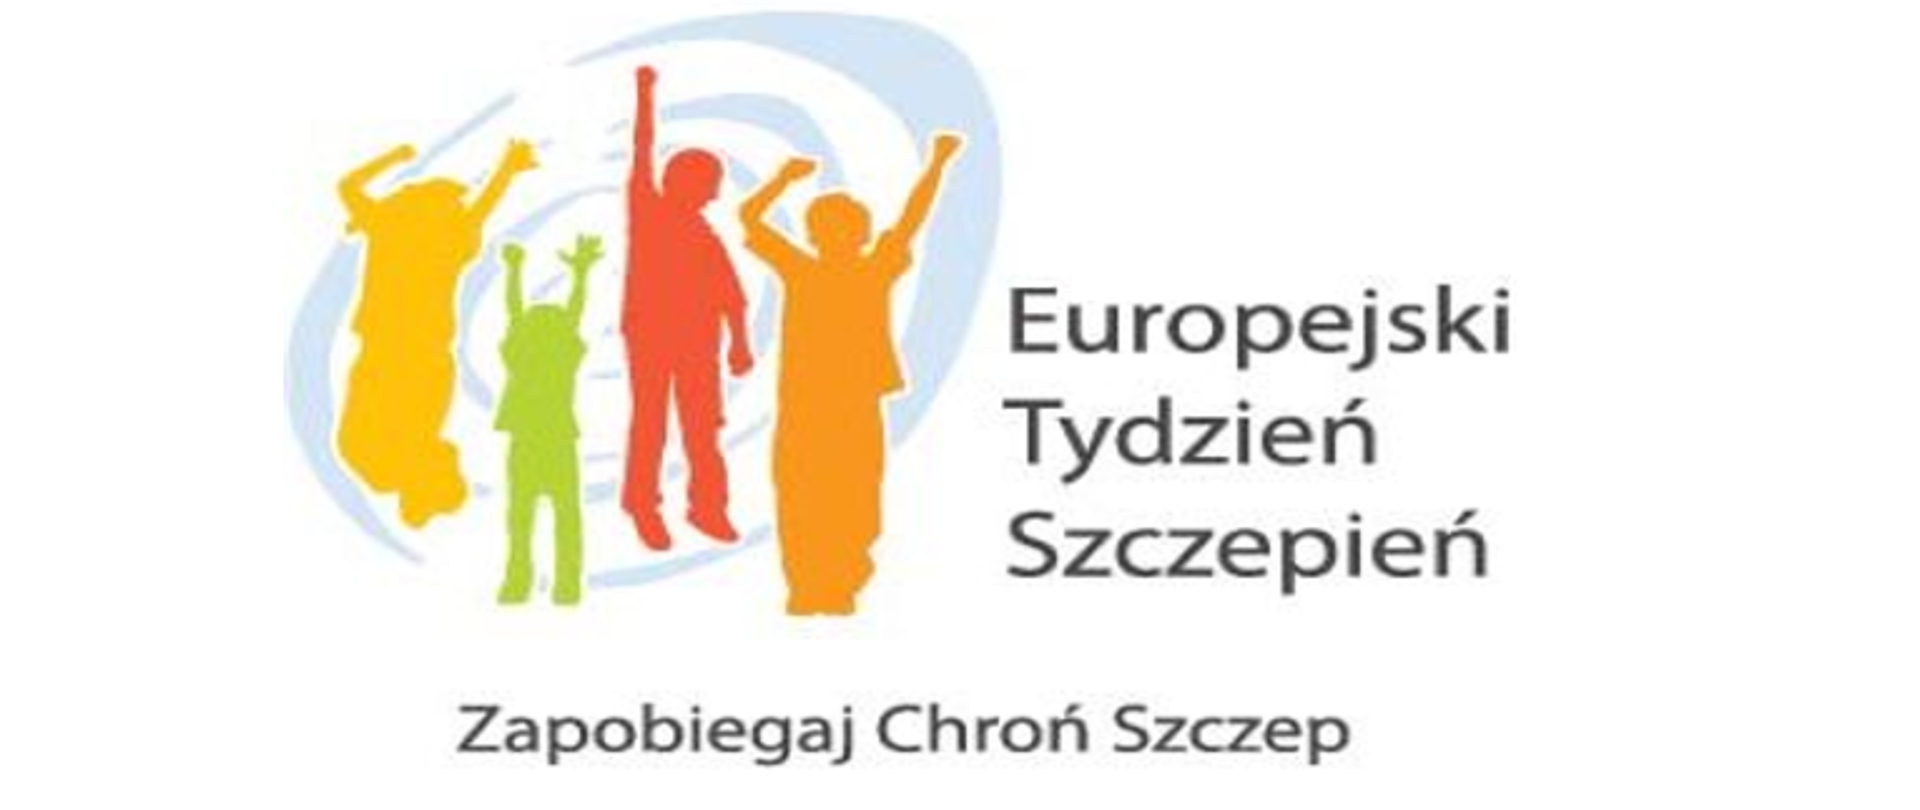 Wypełnione kolorami kontury czterech osób: kobieta (pomarańczowy), mężczyzna (czerwony), dziecko (zielony), nastolatek (żółty), z gestami zadowolenia wyrażonymi podniesionymi rękami. Napis: Europejski Tydzień Szczepień Zapobiegaj Chroń Szczep